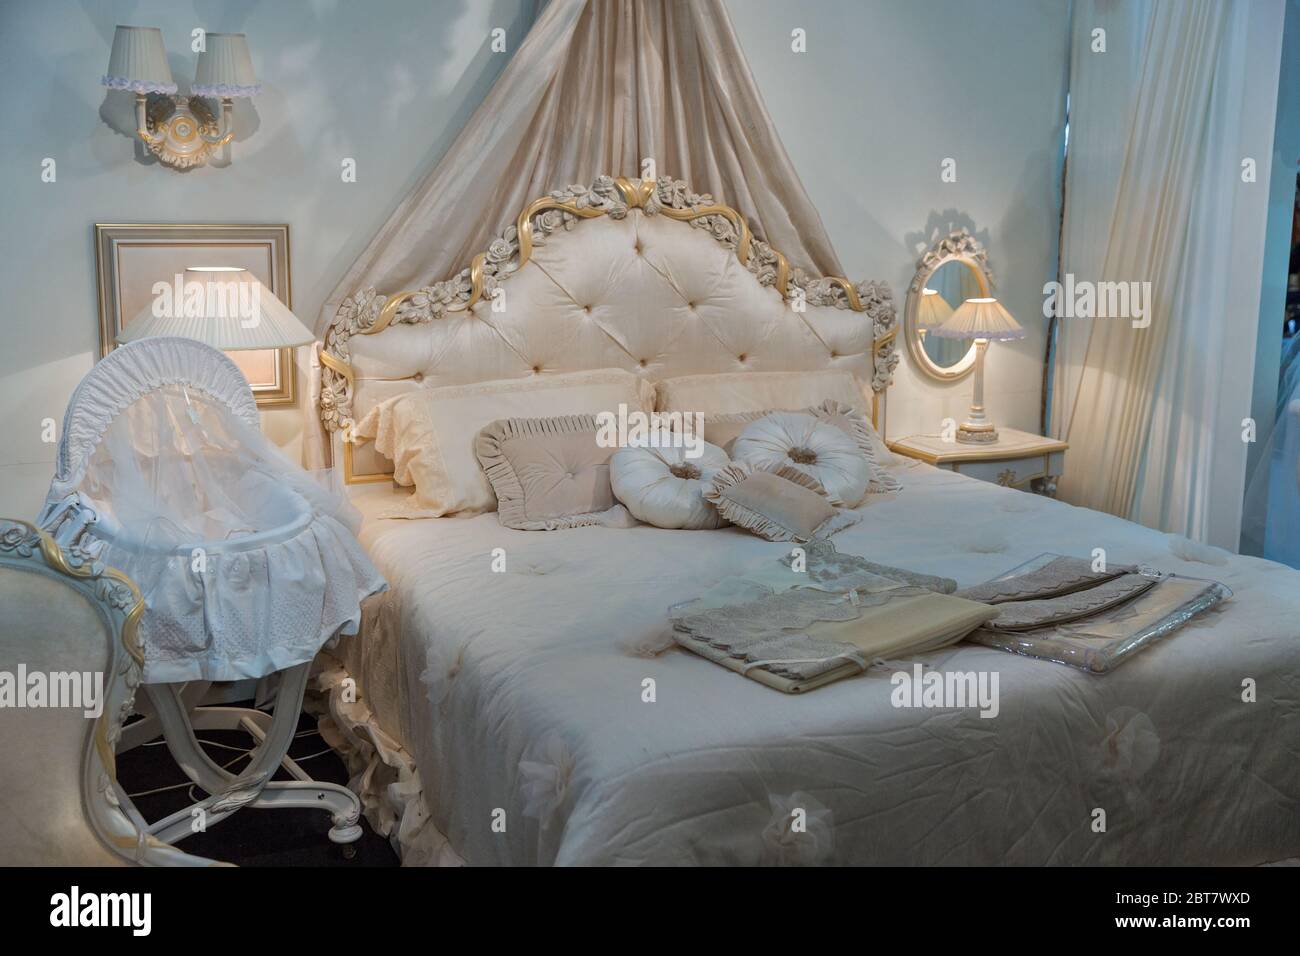 Chambre vide moderne élégante intérieur de style baroque avec lit de bébé  Photo Stock - Alamy